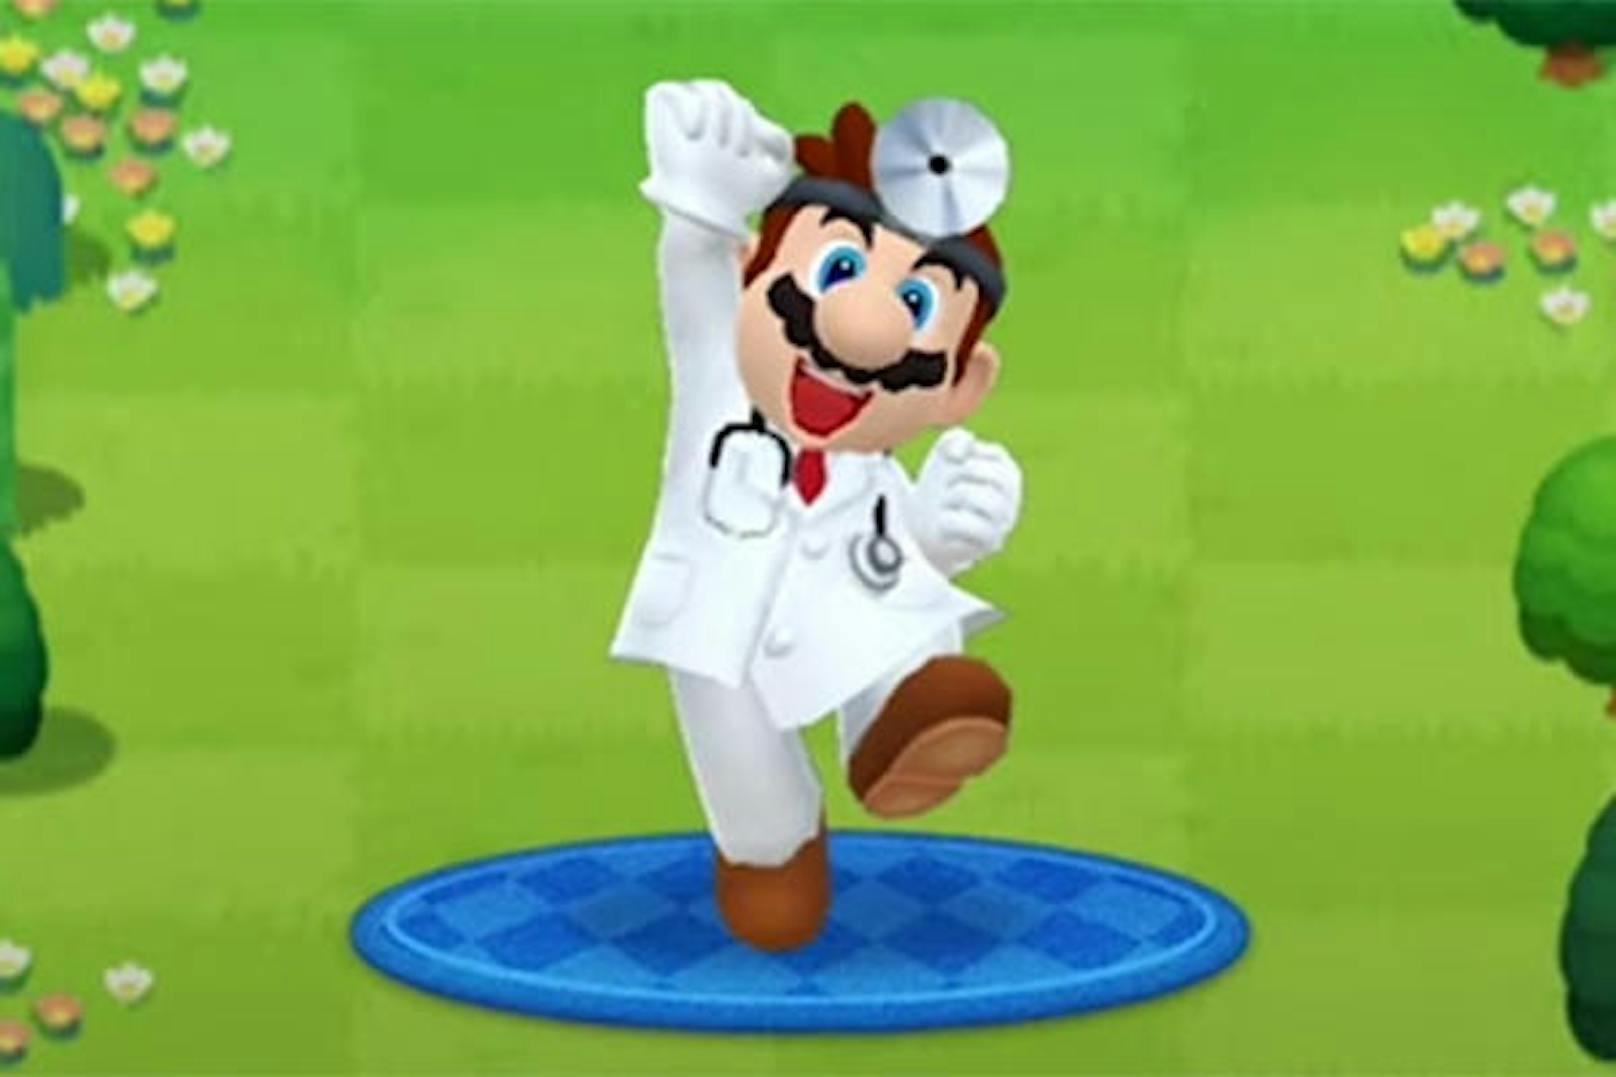 <b>18. Juni 2019:</b> Dr. Mario World, Nintendos neuestes Spiel für Smartphones, erscheint am 10. Juli für iOS- and Android-Geräte. Nintendo-Fans können sich auf drmario-world.com voranmelden, um sofort benachrichtigt zu werden, sobald das mobile Puzzle-Spiel verfügbar ist. In Dr. Mario World versetzen tückische Viren die Welt in Angst und Schrecken. Nun liegt es an Dr. Mario und seinen Freunden, die Epidemie zu beseitigen, indem sie Kapseln den Viren derselben Farbe zuordnen. Neben einer ruhigen Hand bedarf es dafür auch der richtigen Strategie, da für jedes Level nur eine begrenzte Anzahl an Kapseln zur Verfügung stehen. Dr. Mario World ist kostenlos installierbar. <a href="https://www.youtube.com/watch?v=8b4DNKfs_tU">Trailer zu zu Dr. Mario World ansehen!</a>